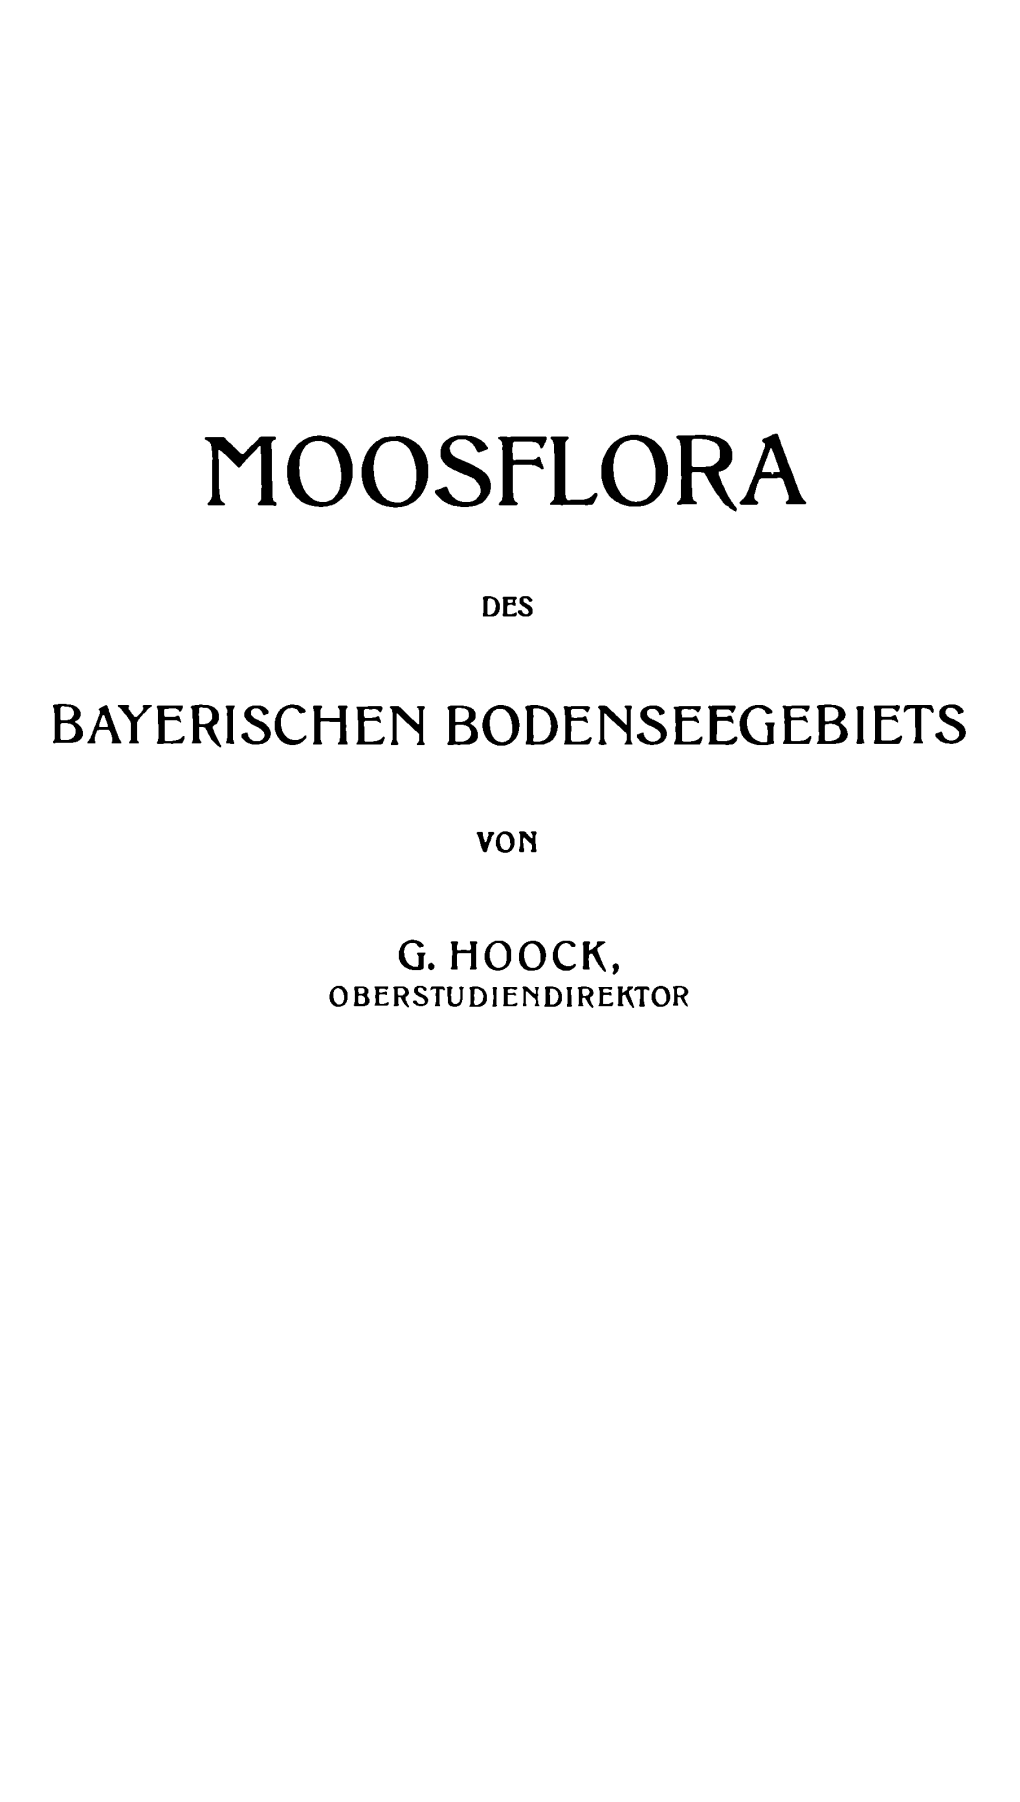 Moosflora Des Bayerischen Bodenseegebietsgeorg